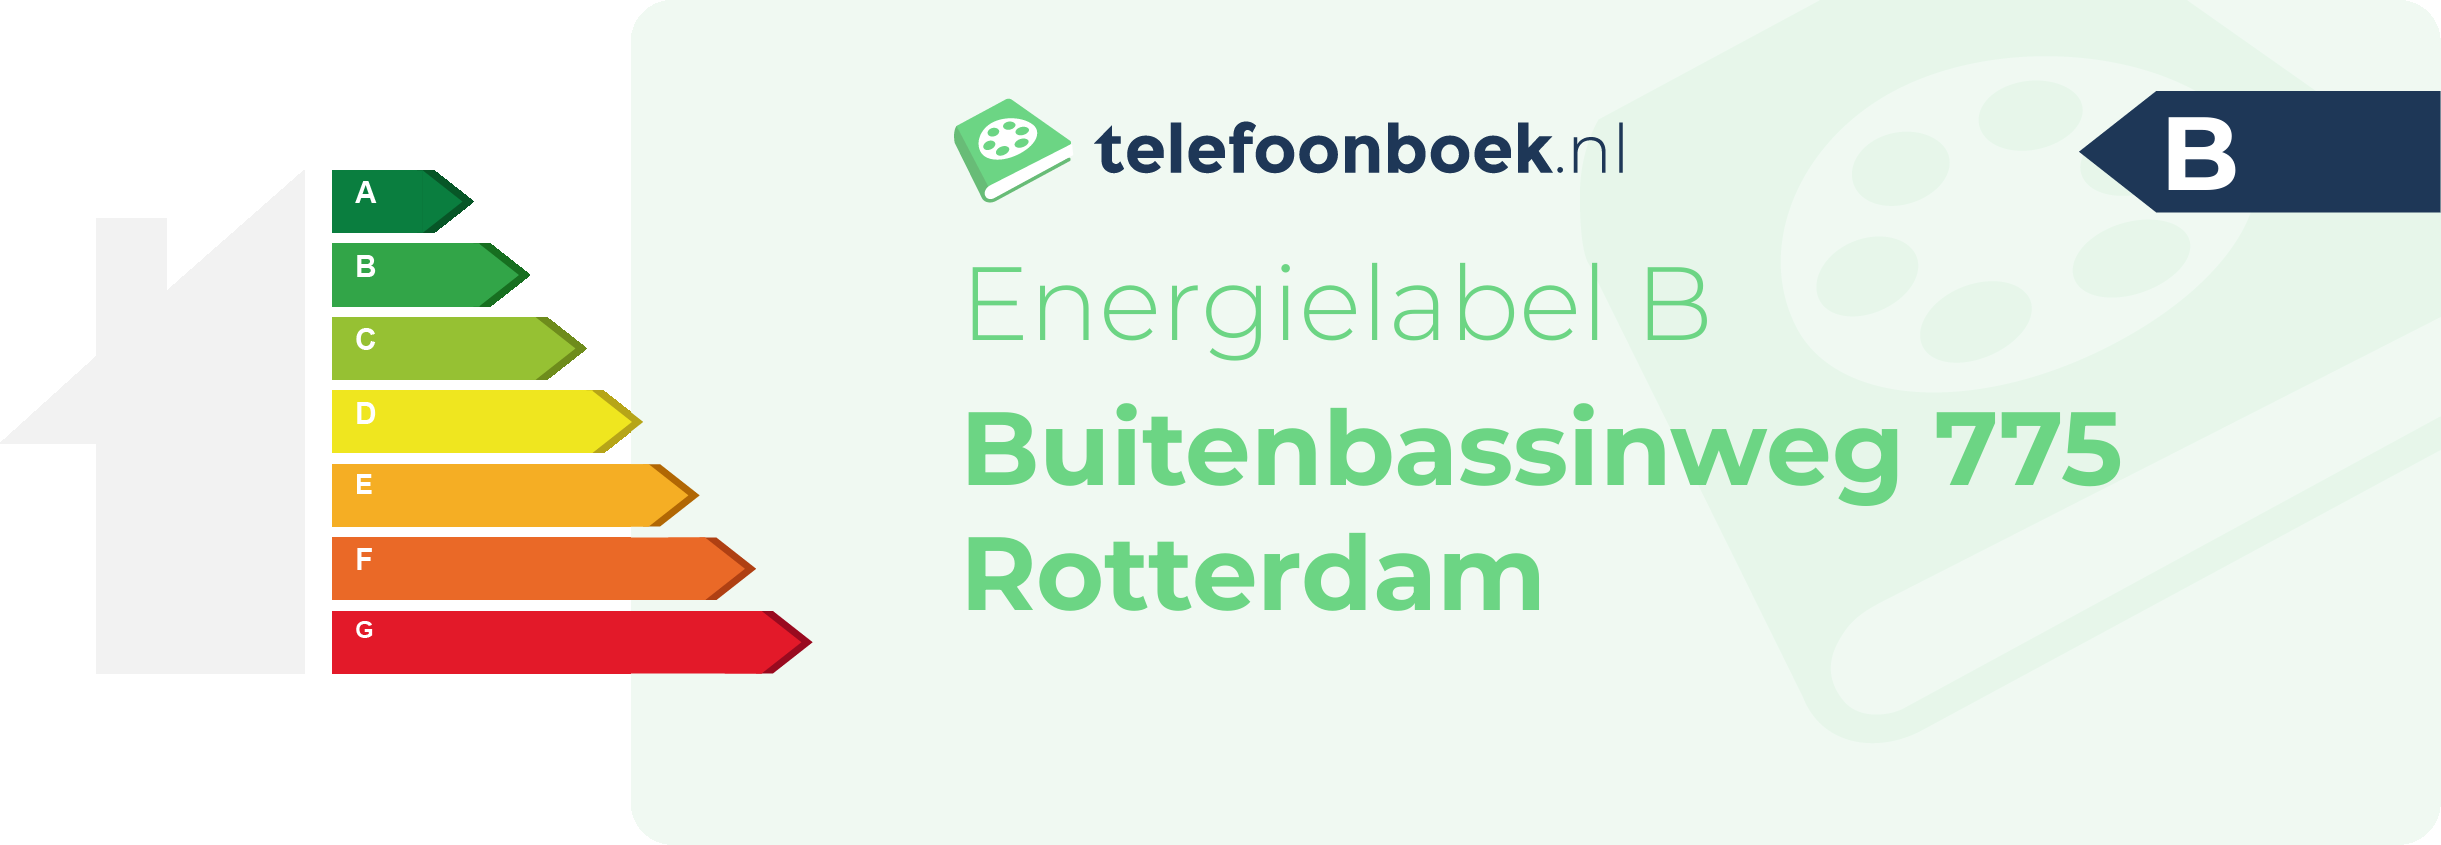 Energielabel Buitenbassinweg 775 Rotterdam